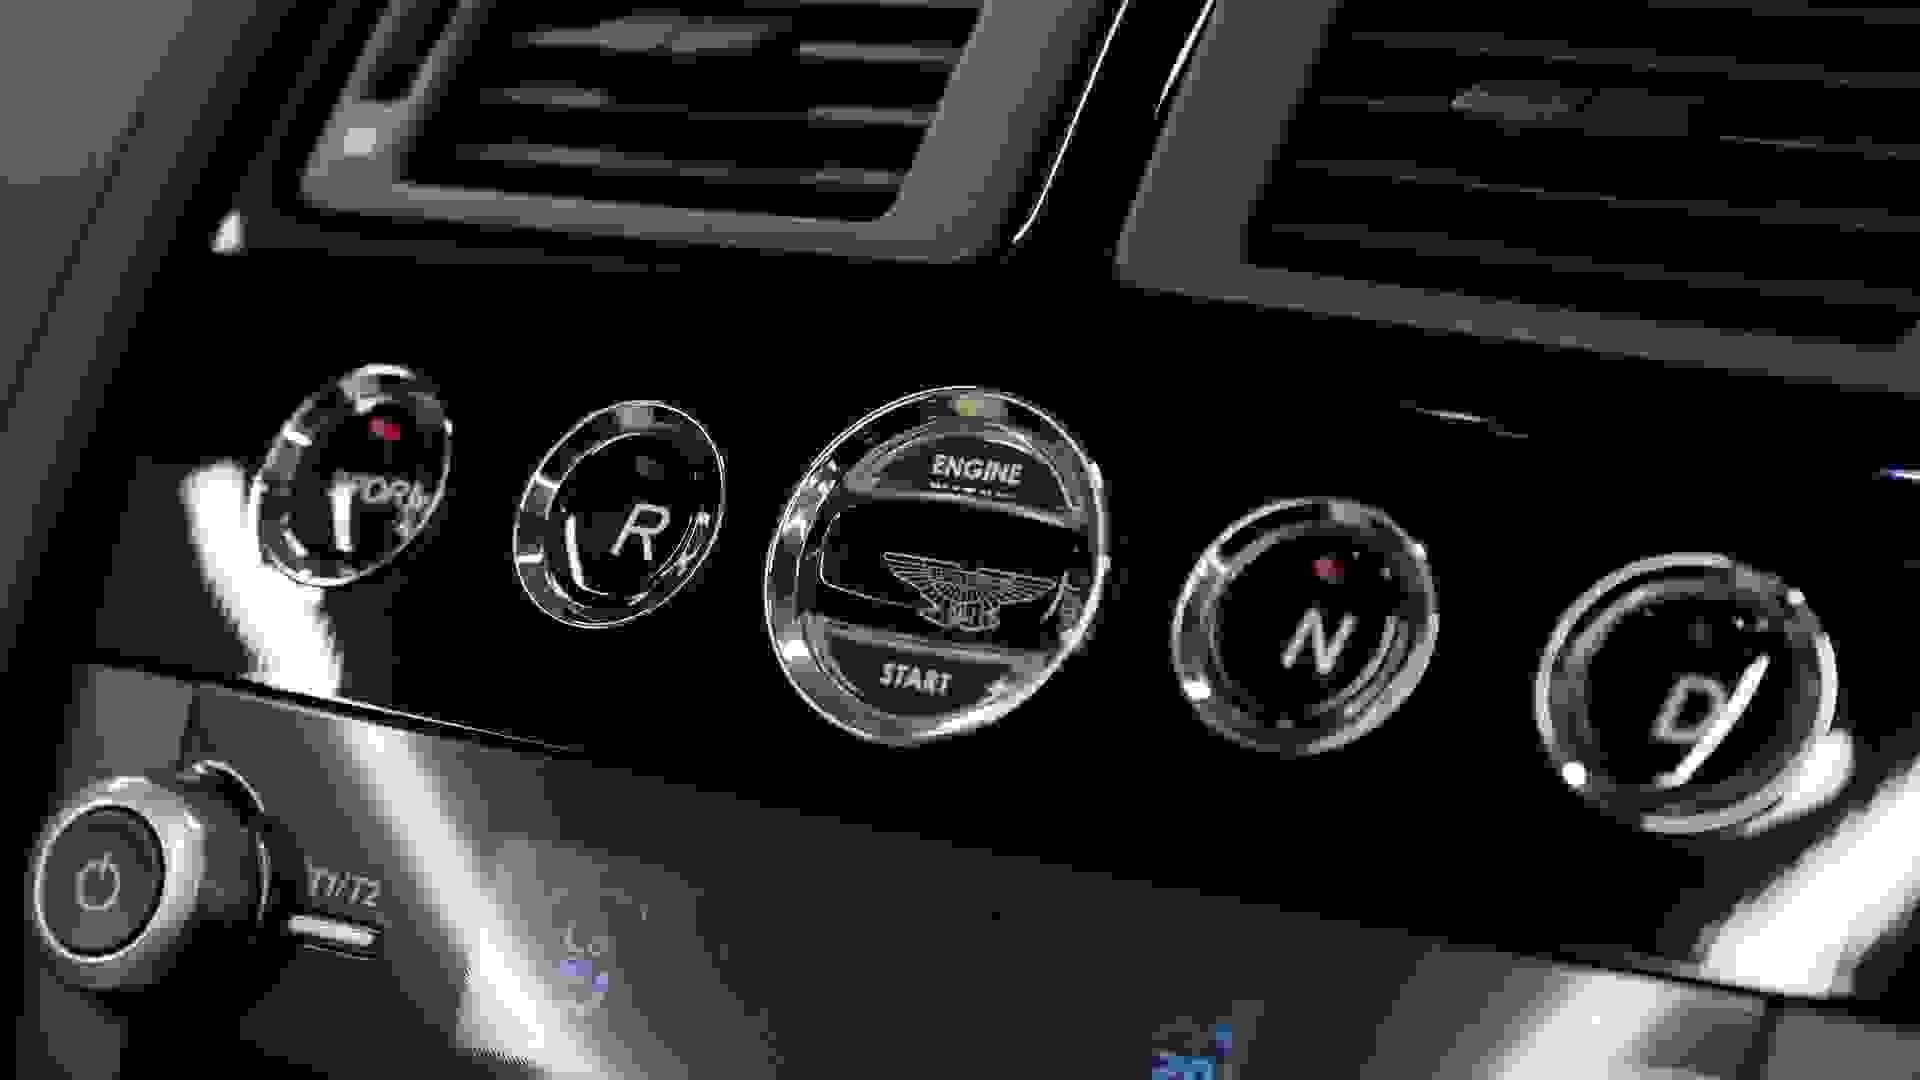 Aston Martin V8 Vantage Photo 8d9a32f3-f72a-4917-a604-81b7c3141860.jpg